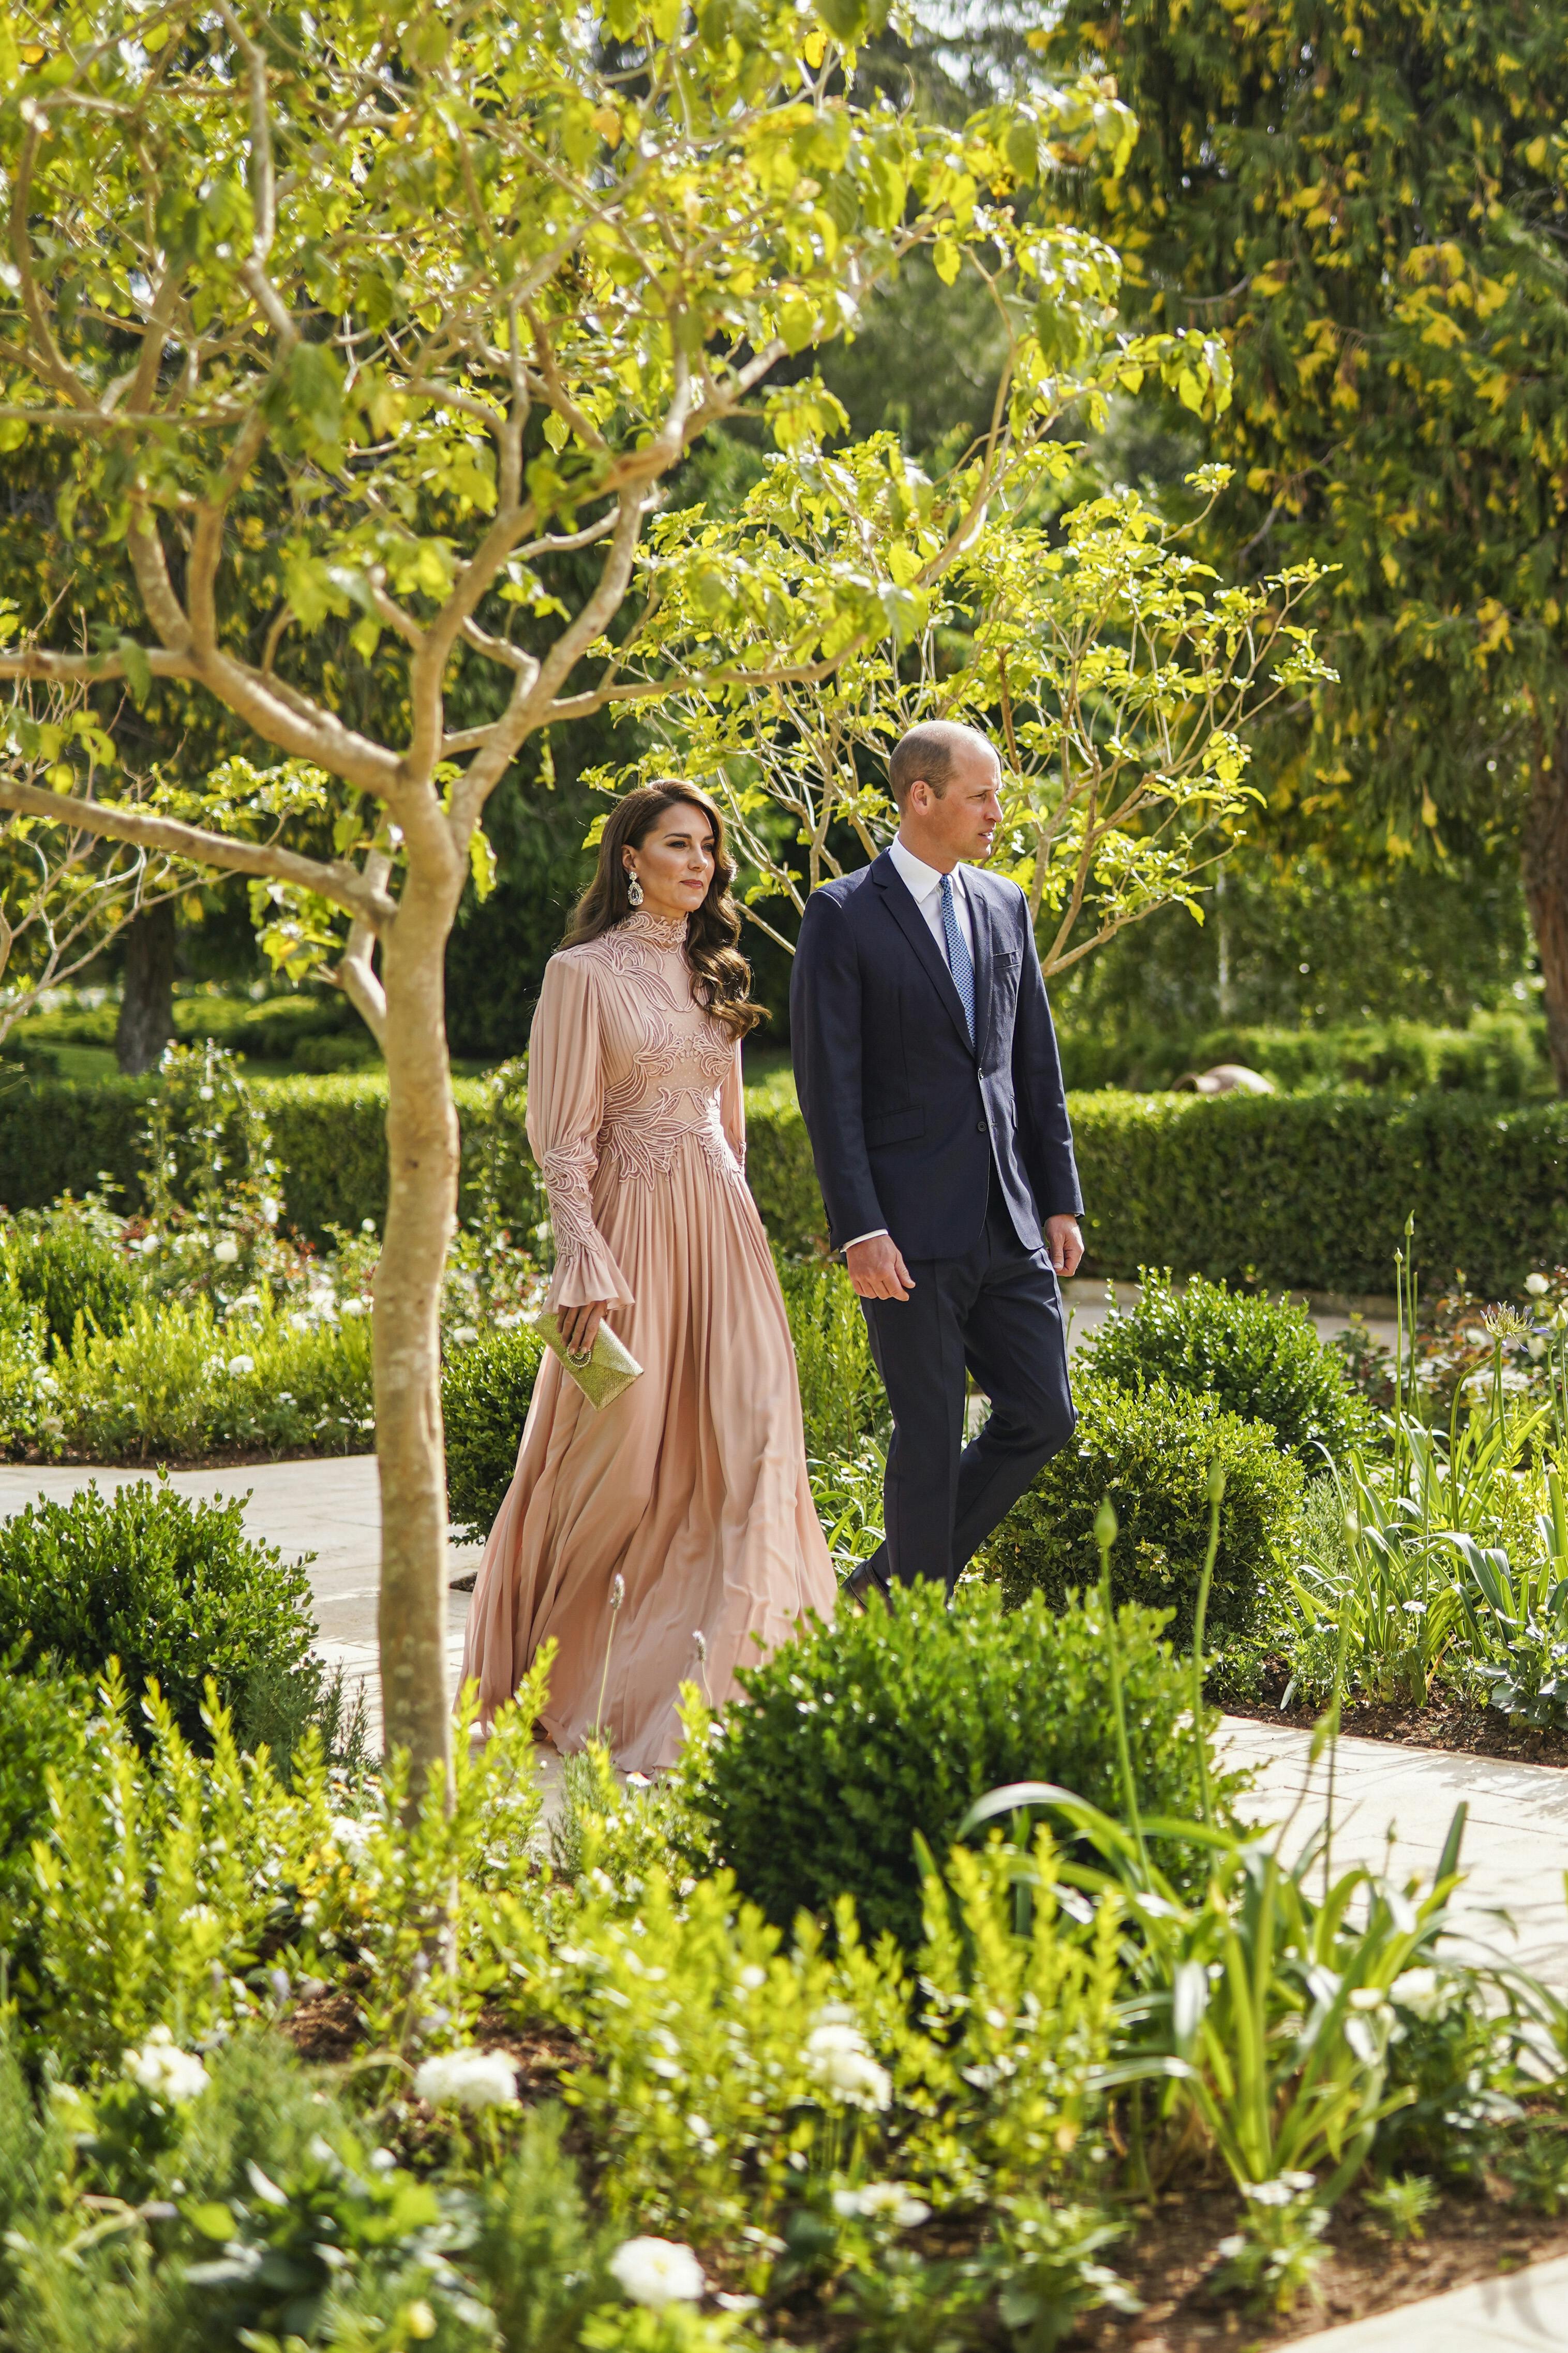 Prinsesse Kate og prins William. Kjolen er af den libanesiske designer Elie Saab.&nbsp;
